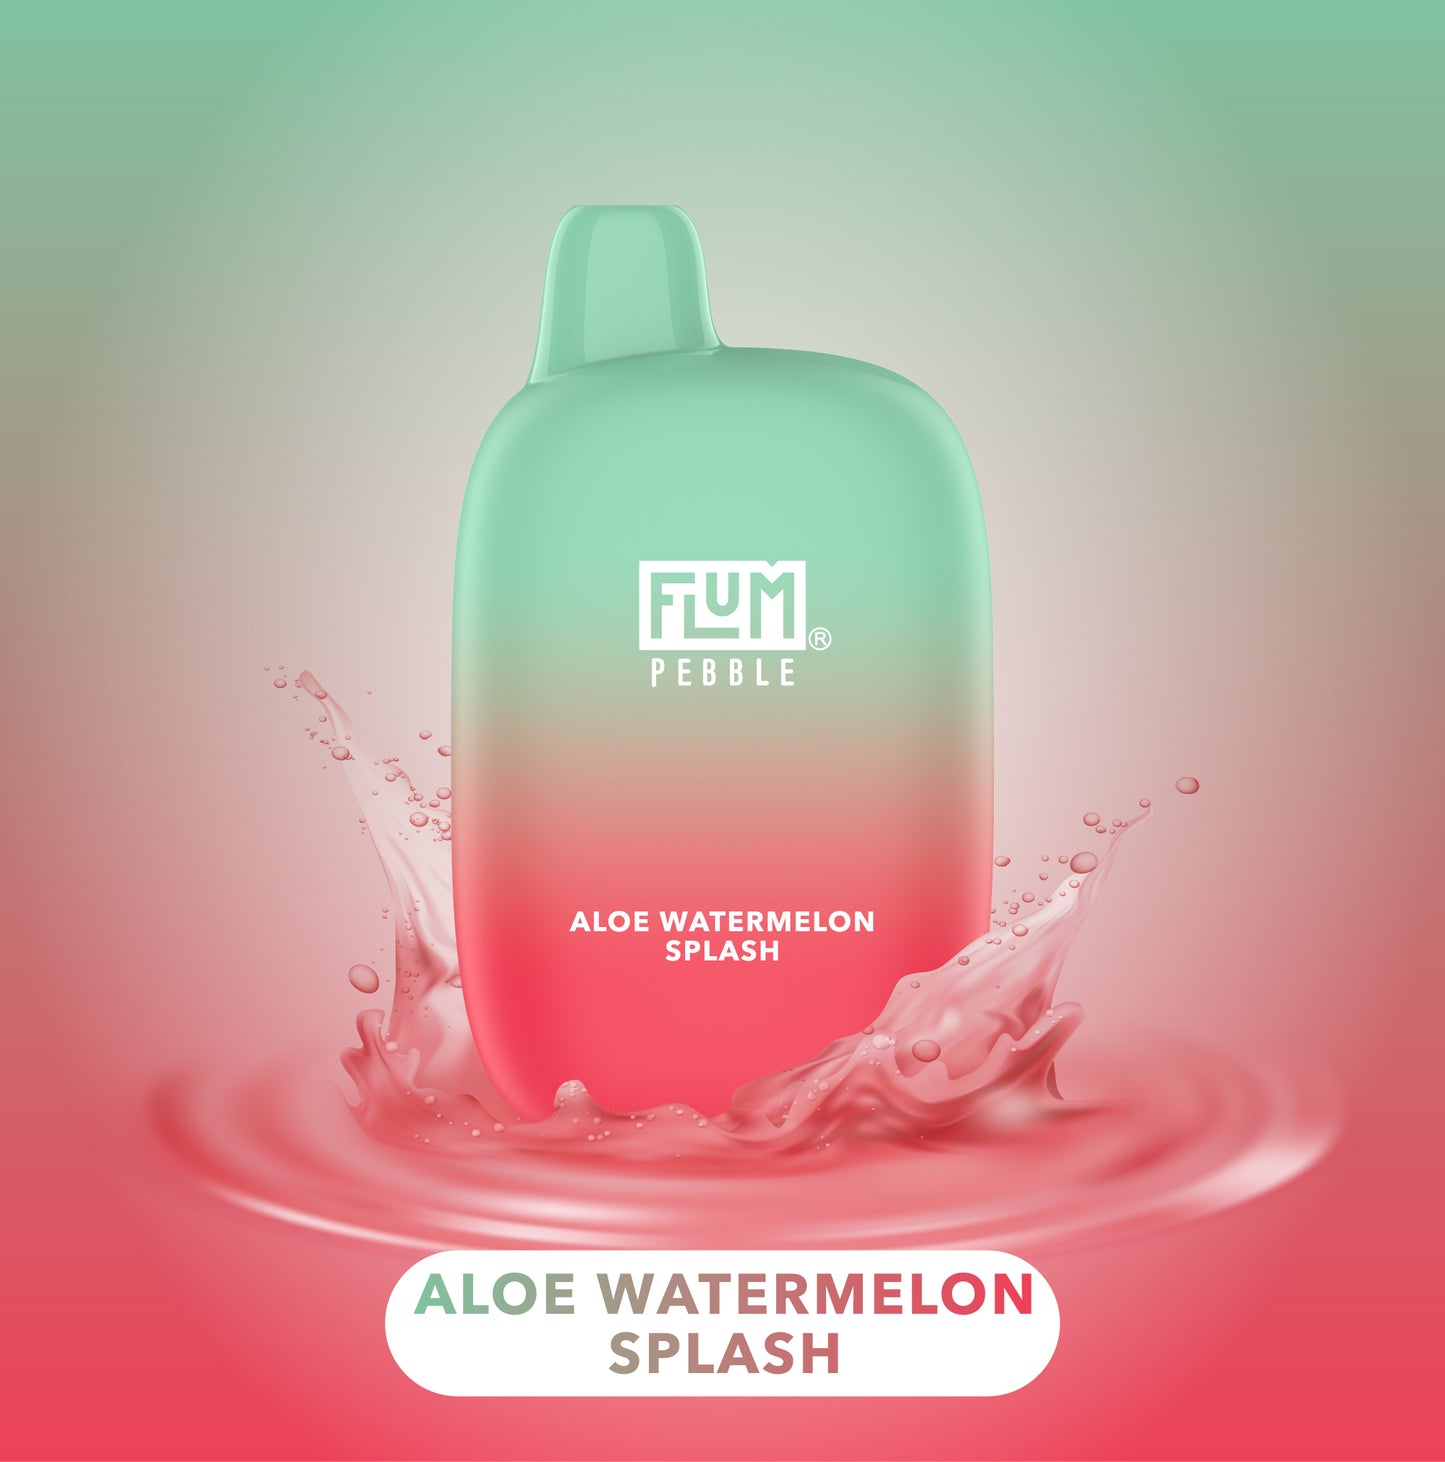 FLUM Pebble - Aloe Watermelon Splash